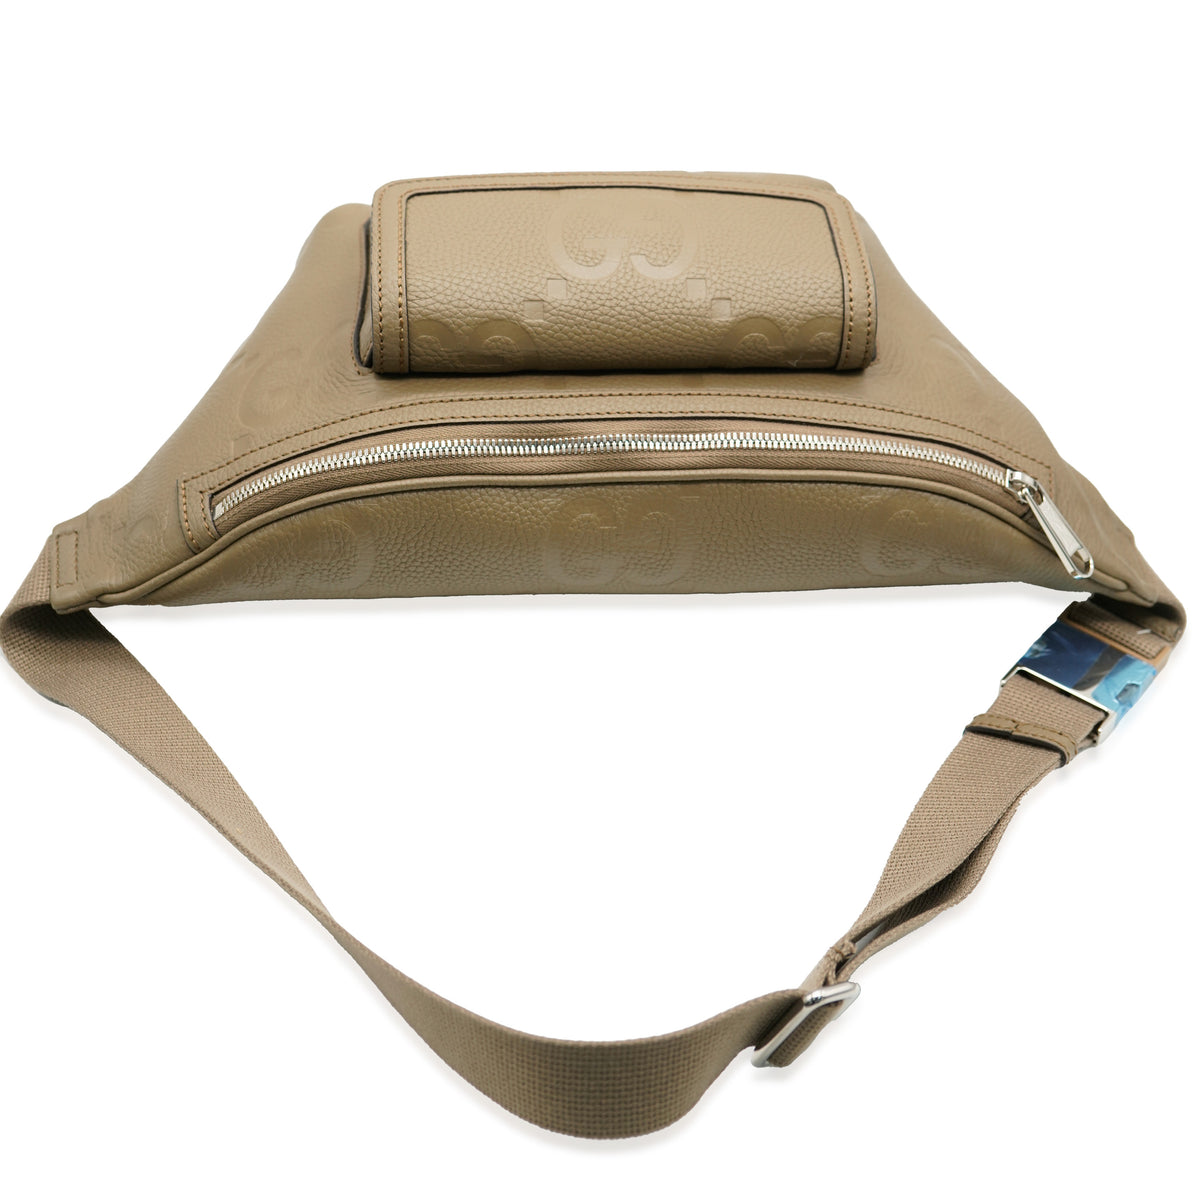 Taupe Piuma Calfskin Jumbo GG Embossed Pocket Belt Bag